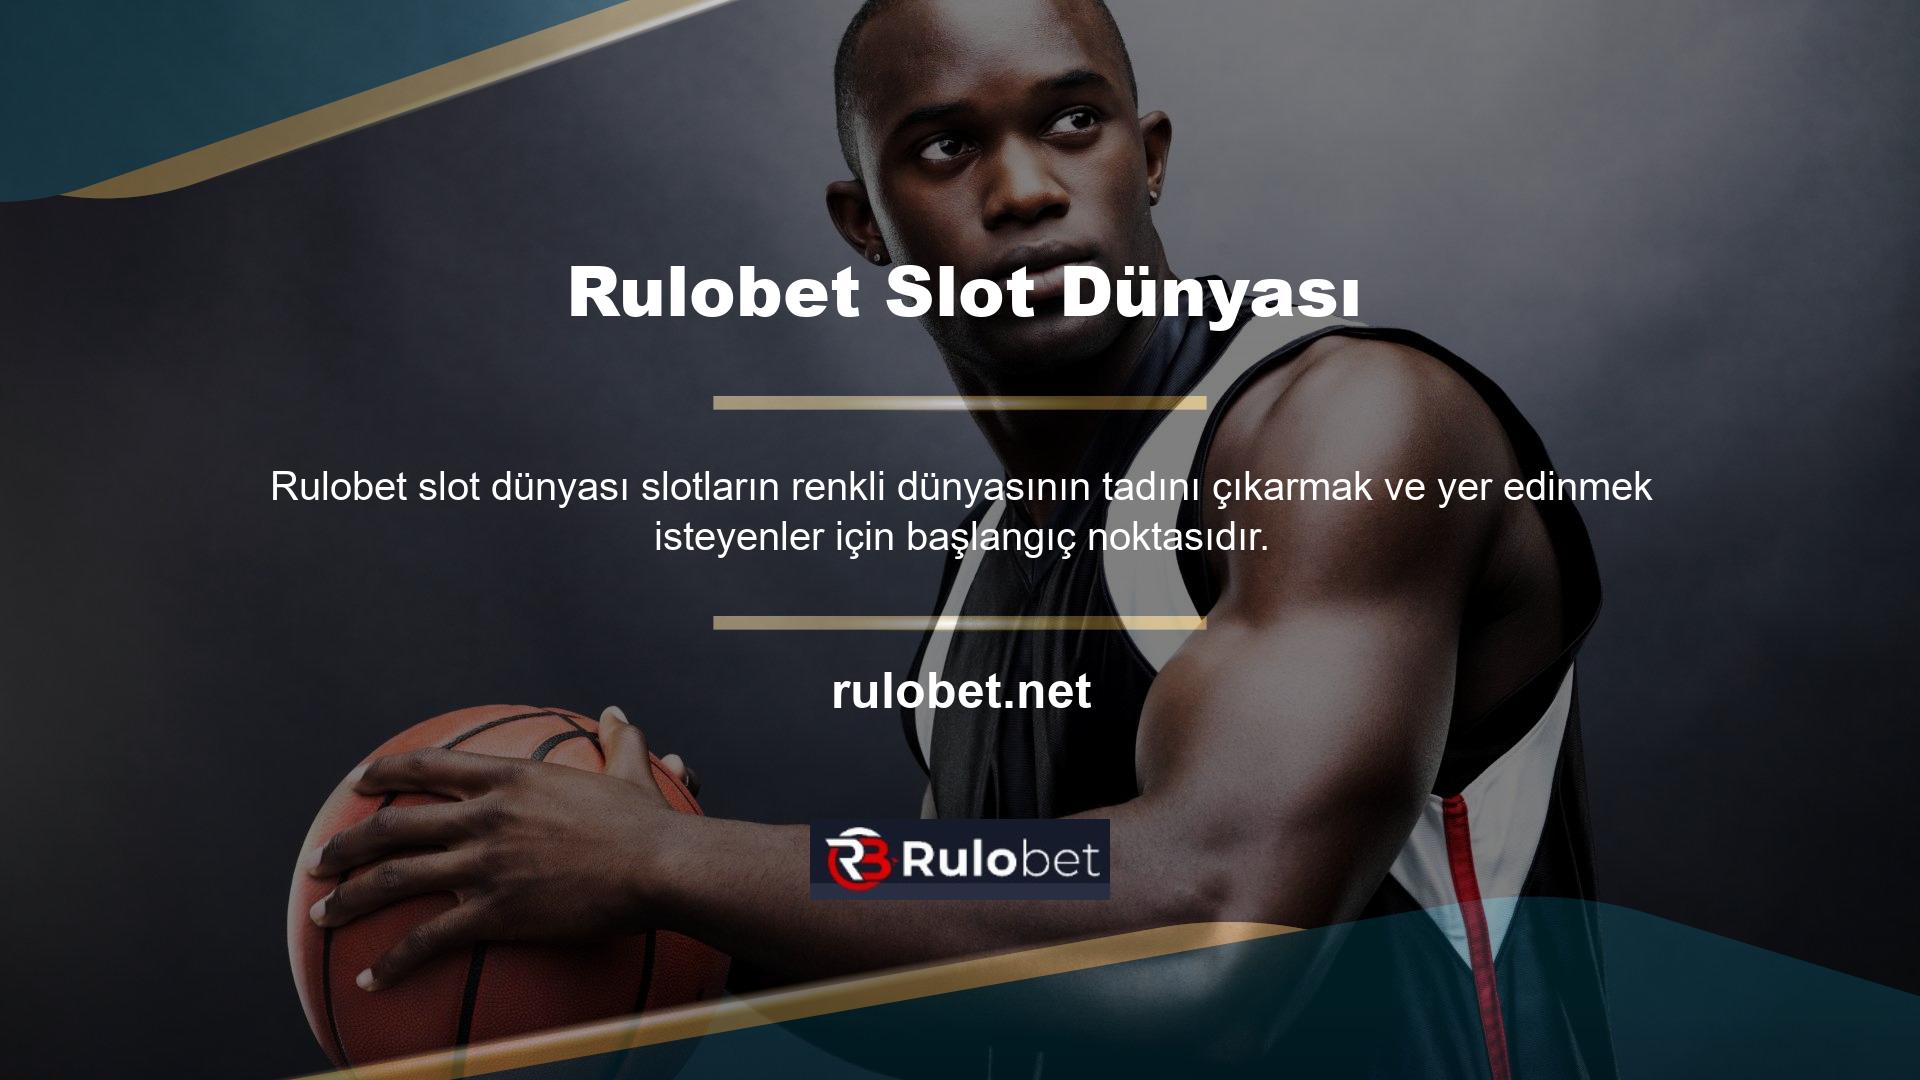 Rulobet cep telefonunuzun adresi nedir? Çevrimiçi casino sitesi Rulobet, başarılı olması ve tutarlı para çekme ve para yatırma işlemleri sağlamasıyla tanınır